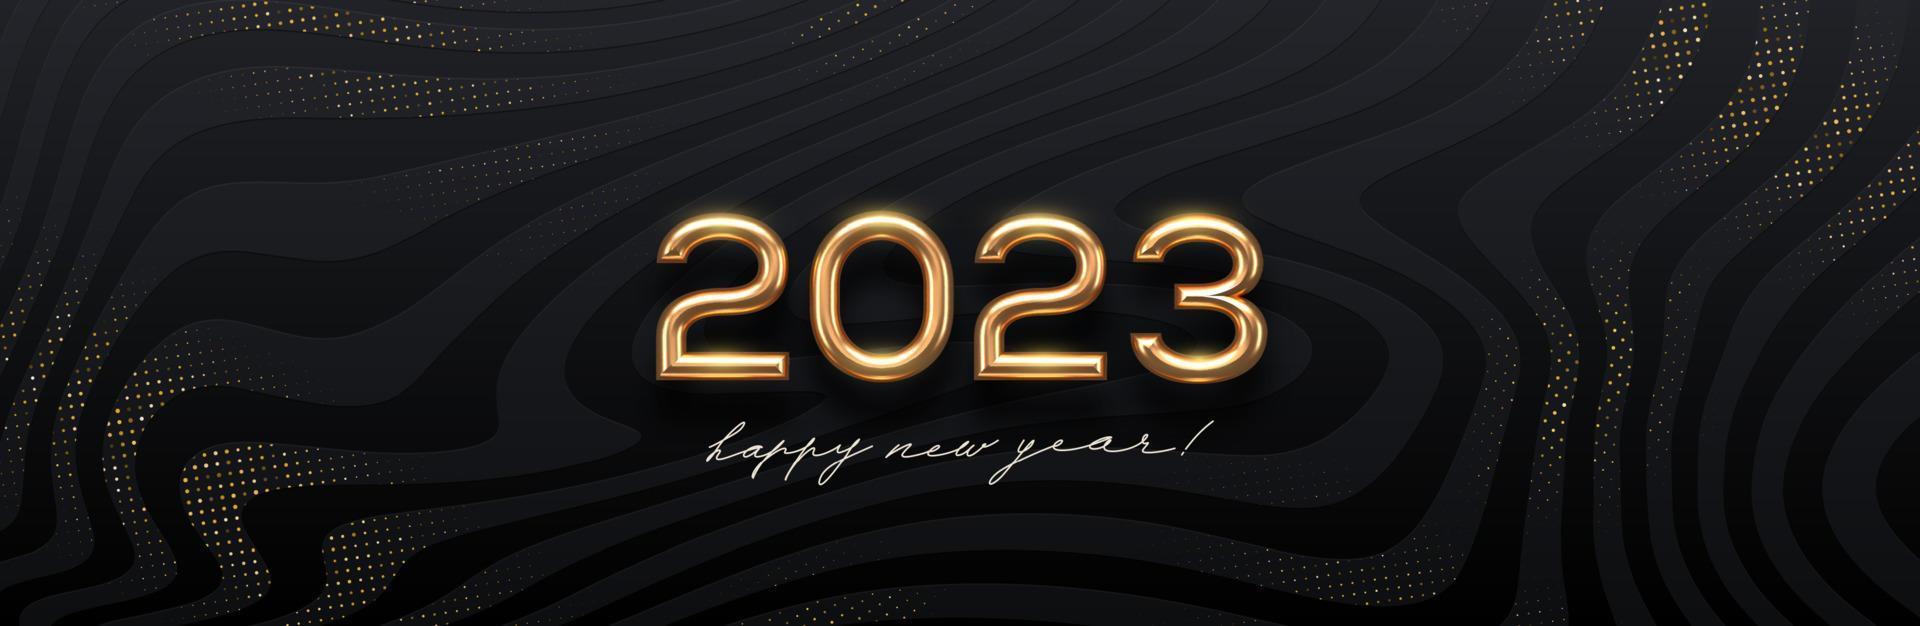 Logo doré du nouvel an 2023 sur fond abstrait vagues noires. conception de voeux avec numéro d'année réaliste en métal doré. conception pour carte de voeux, invitation, calendrier, etc. illustration vectorielle. vecteur